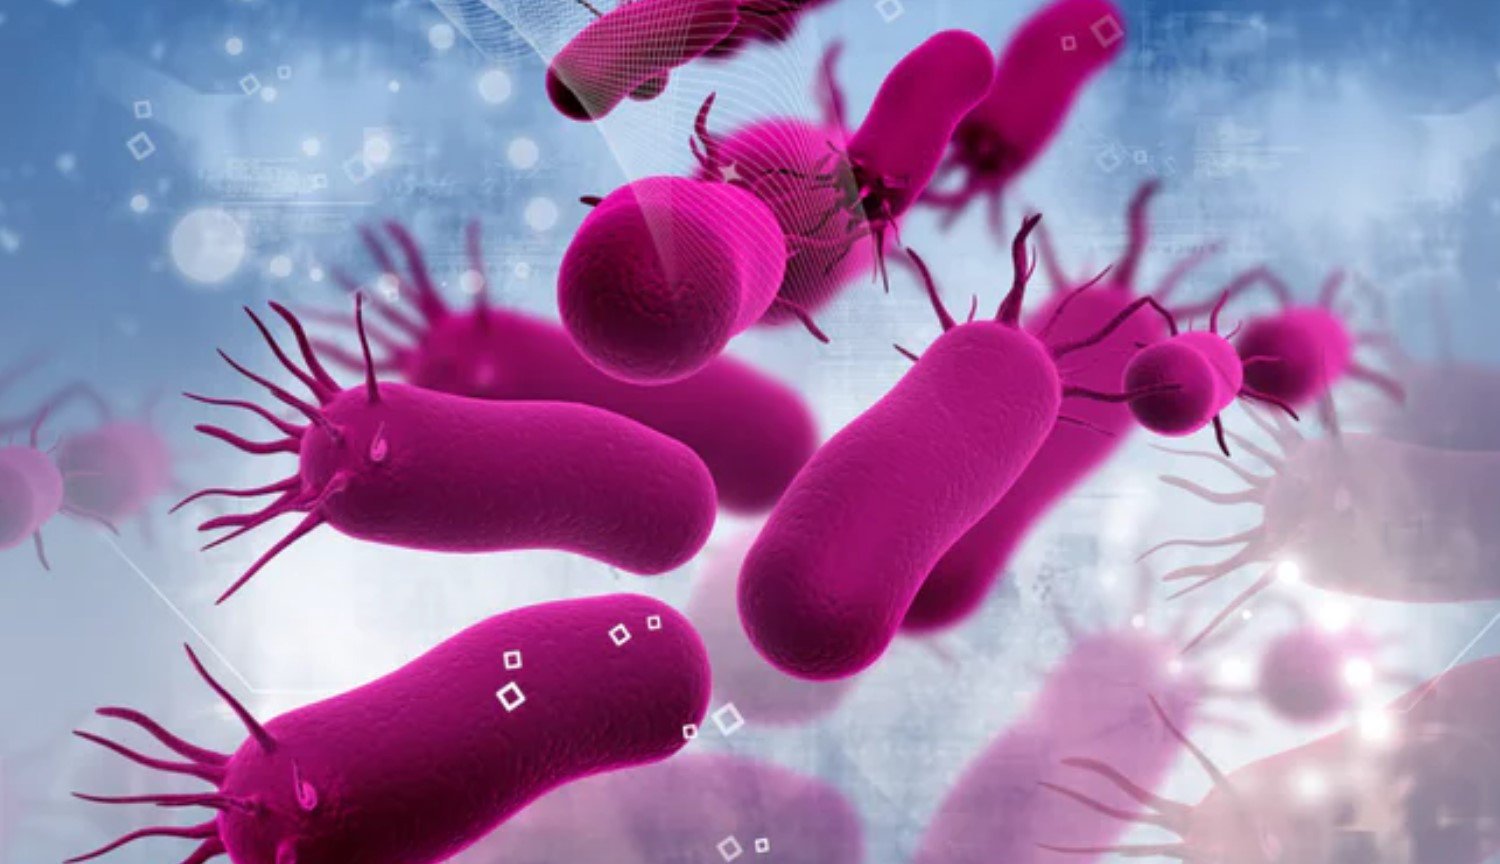 O modo de zumbis: os cientistas descobriram um novo estado de bactérias